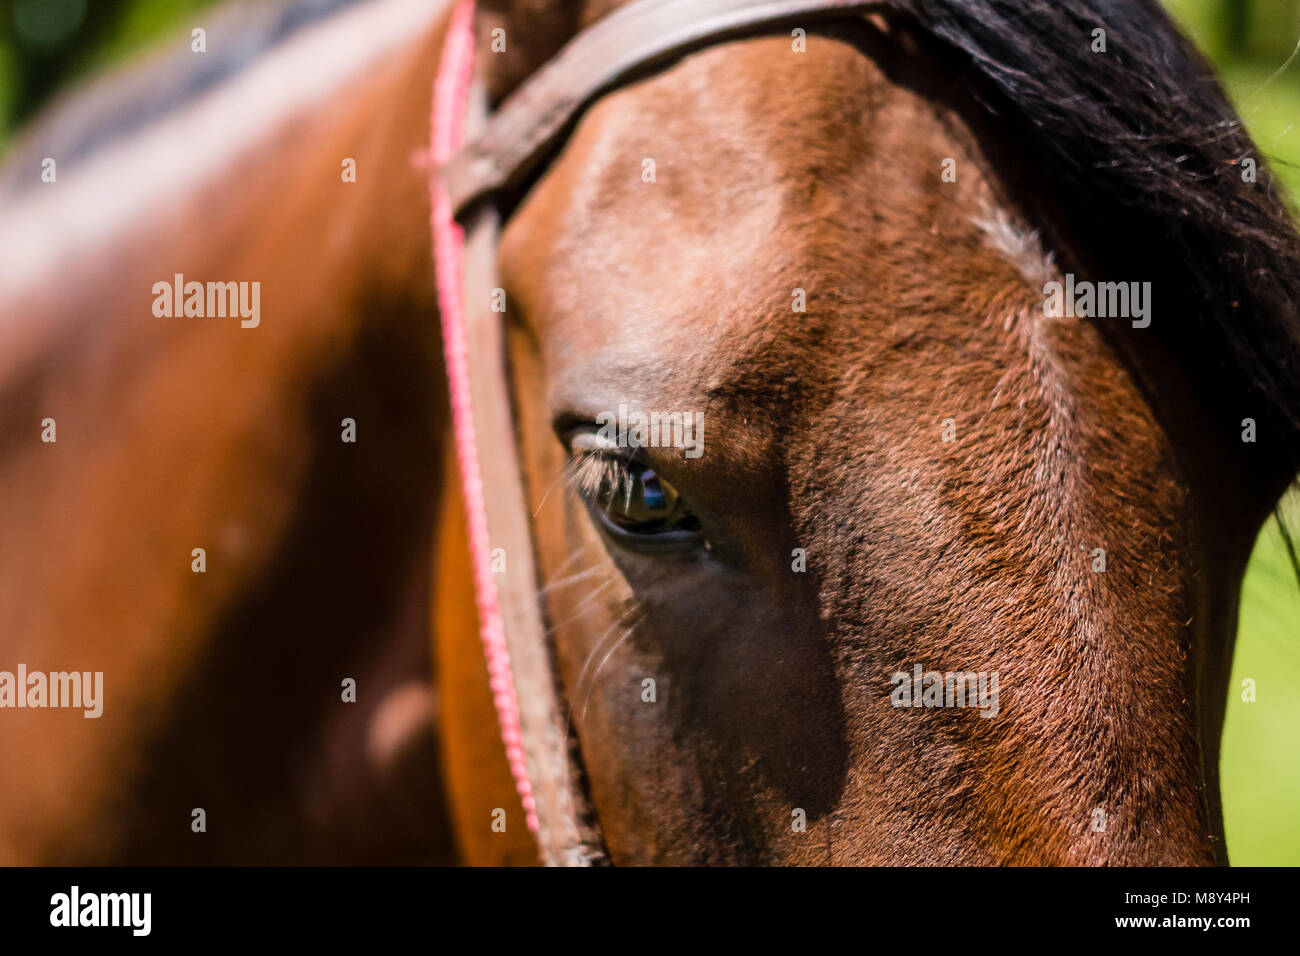 Profile of brown horse, harsh shadows, Cunha, Sao Paulo Stock Photo